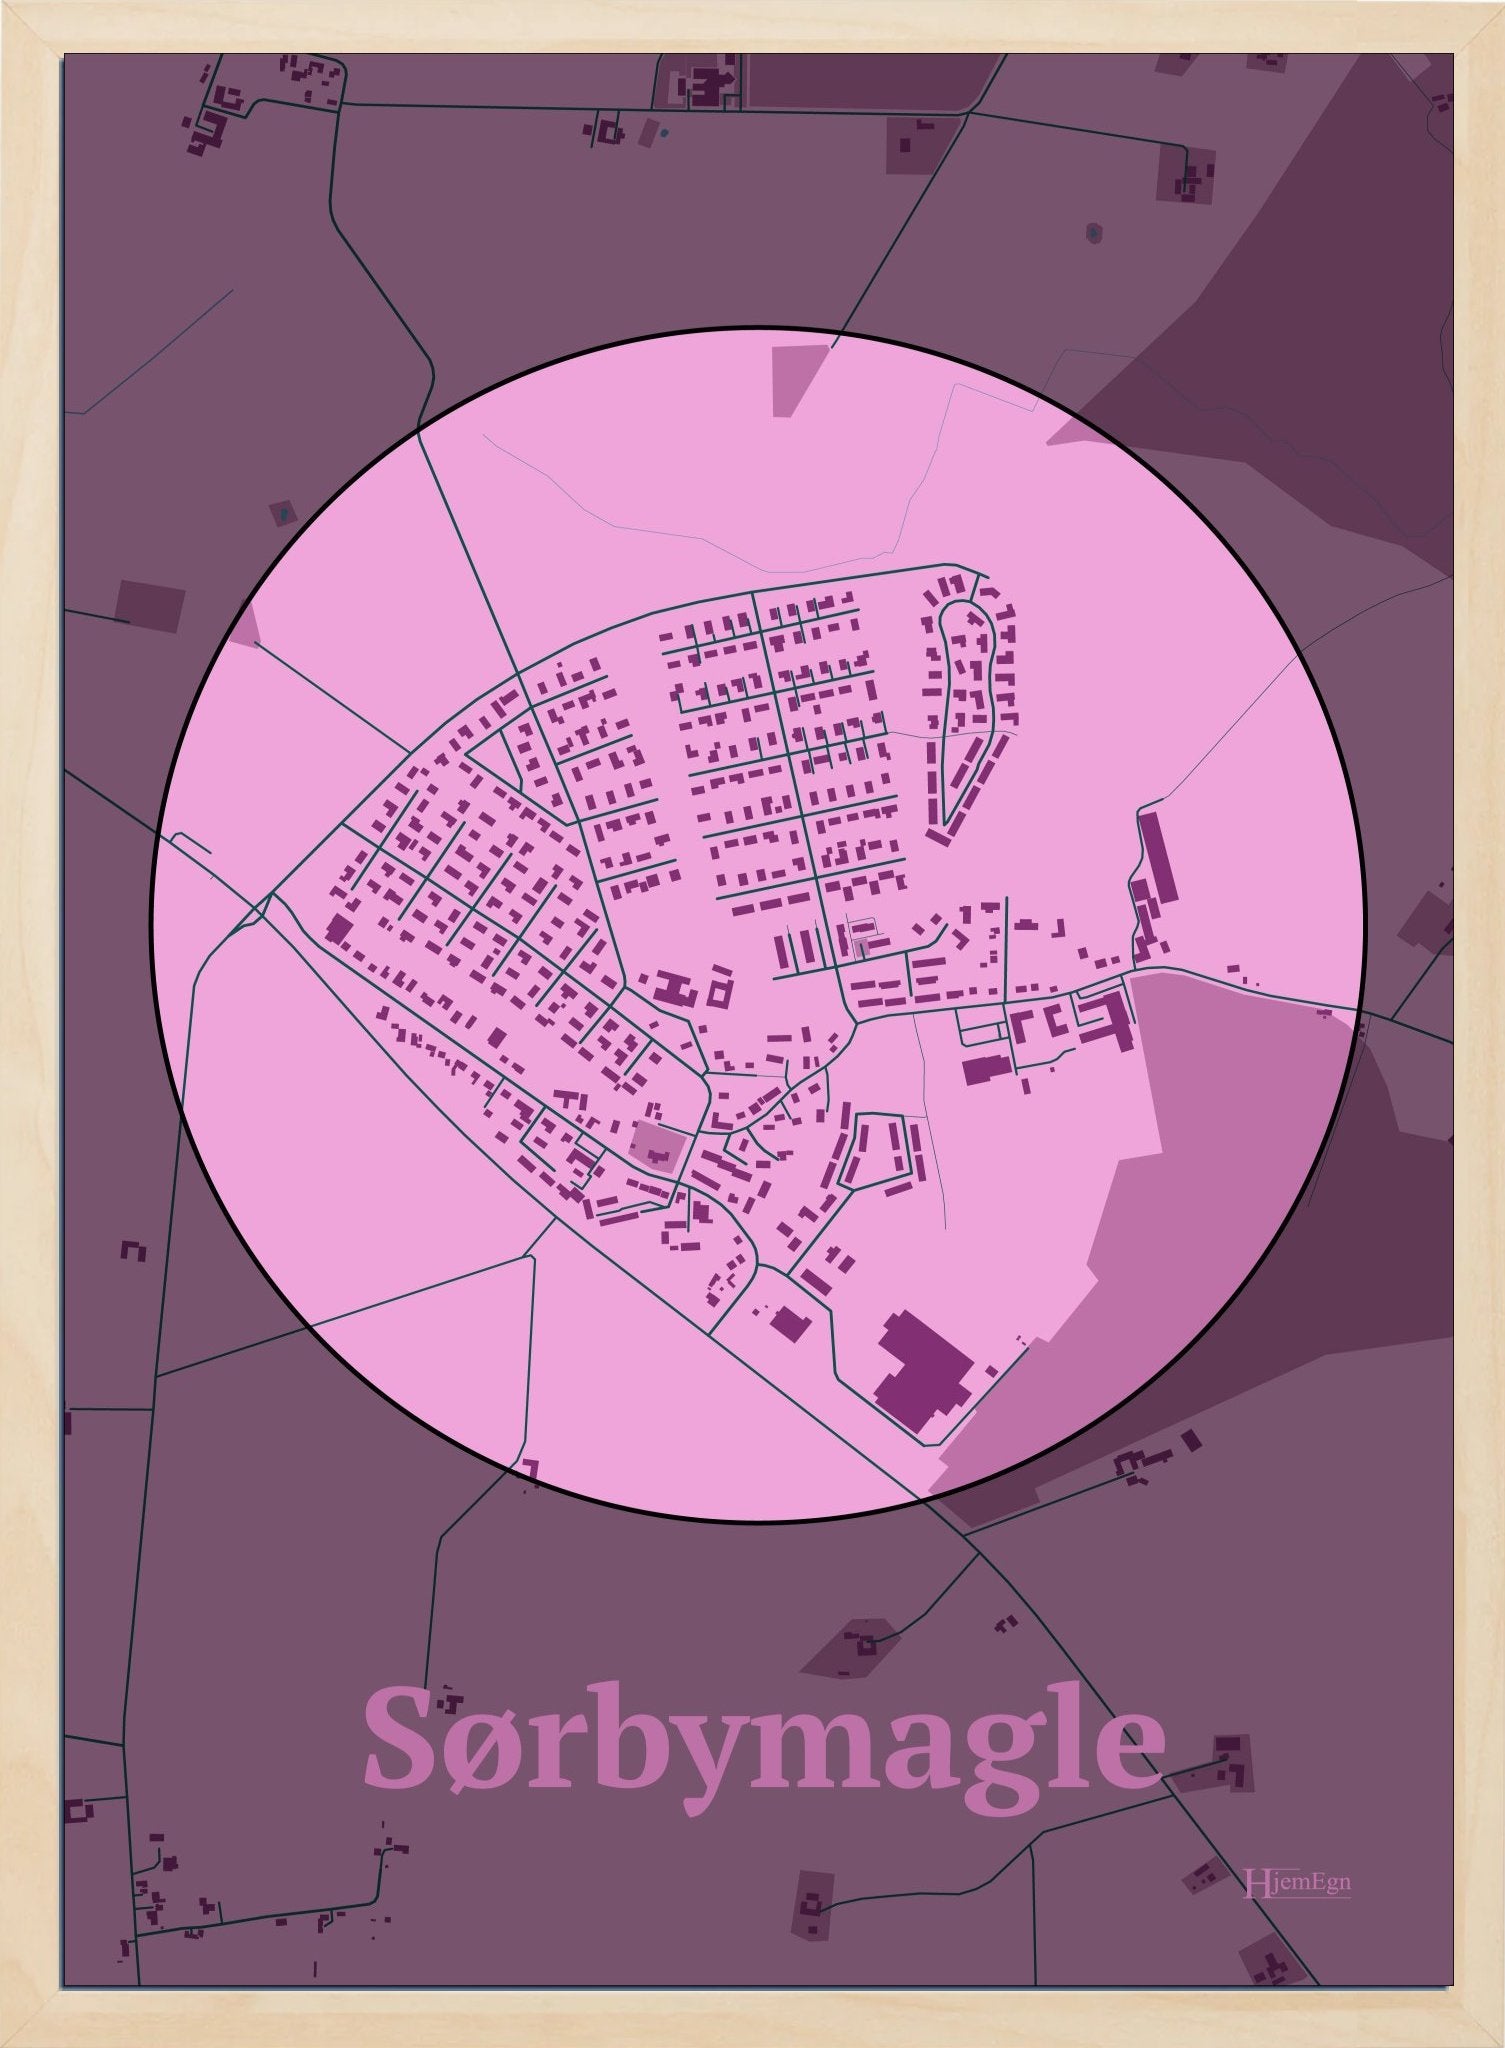 Sørbymagle plakat i farve pastel rød og HjemEgn.dk design centrum. Design bykort for Sørbymagle